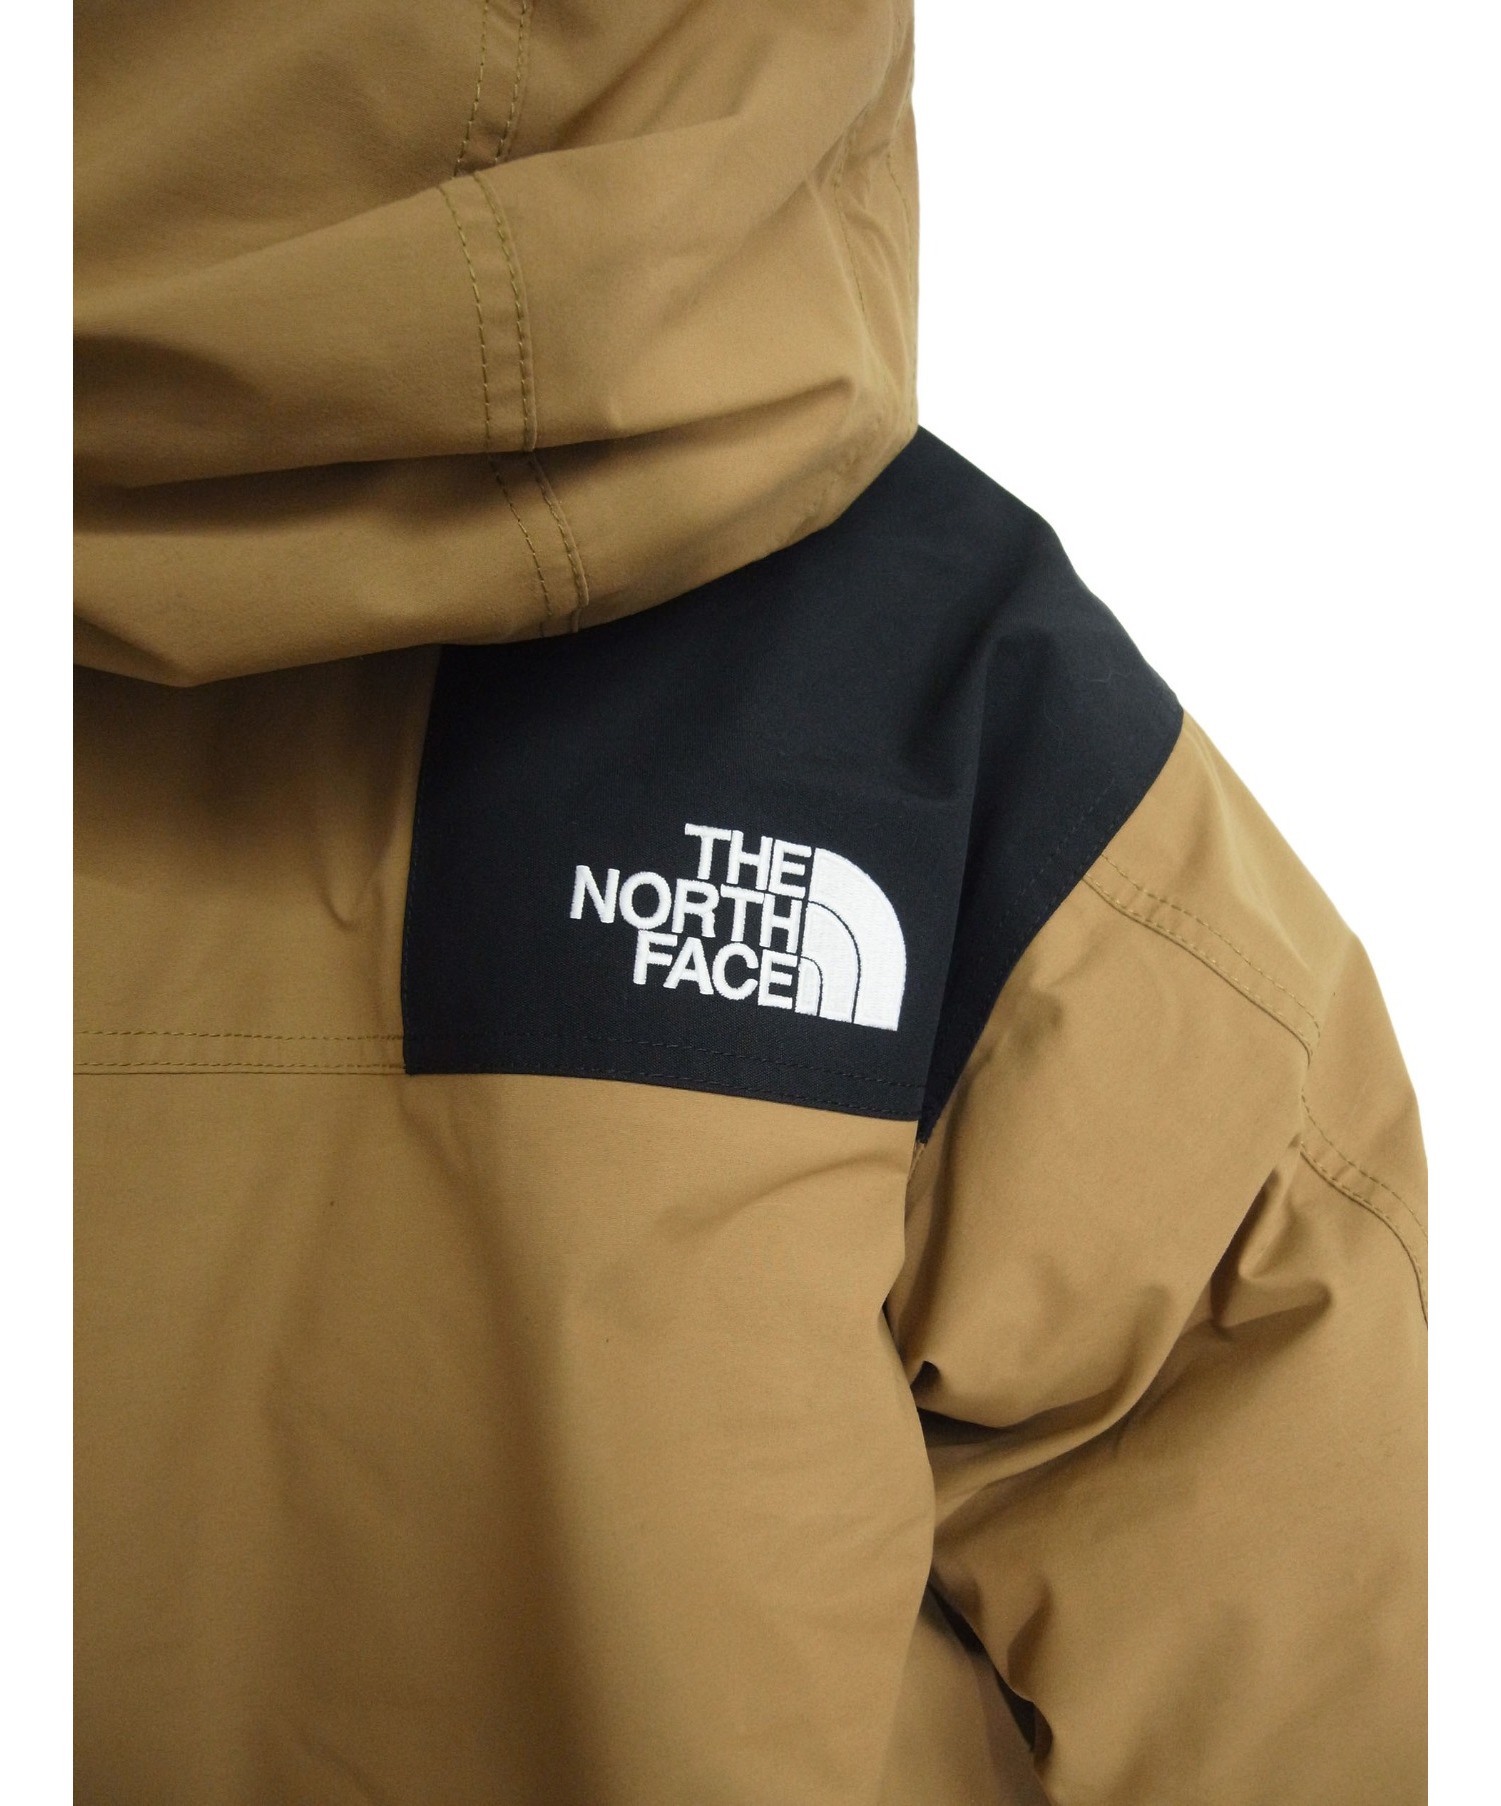 THE NORTH FACE (ザノースフェイス) マウンテンダウンジャケット ブリティッシュカーキ サイズ:L ND91930 GORE-TEX